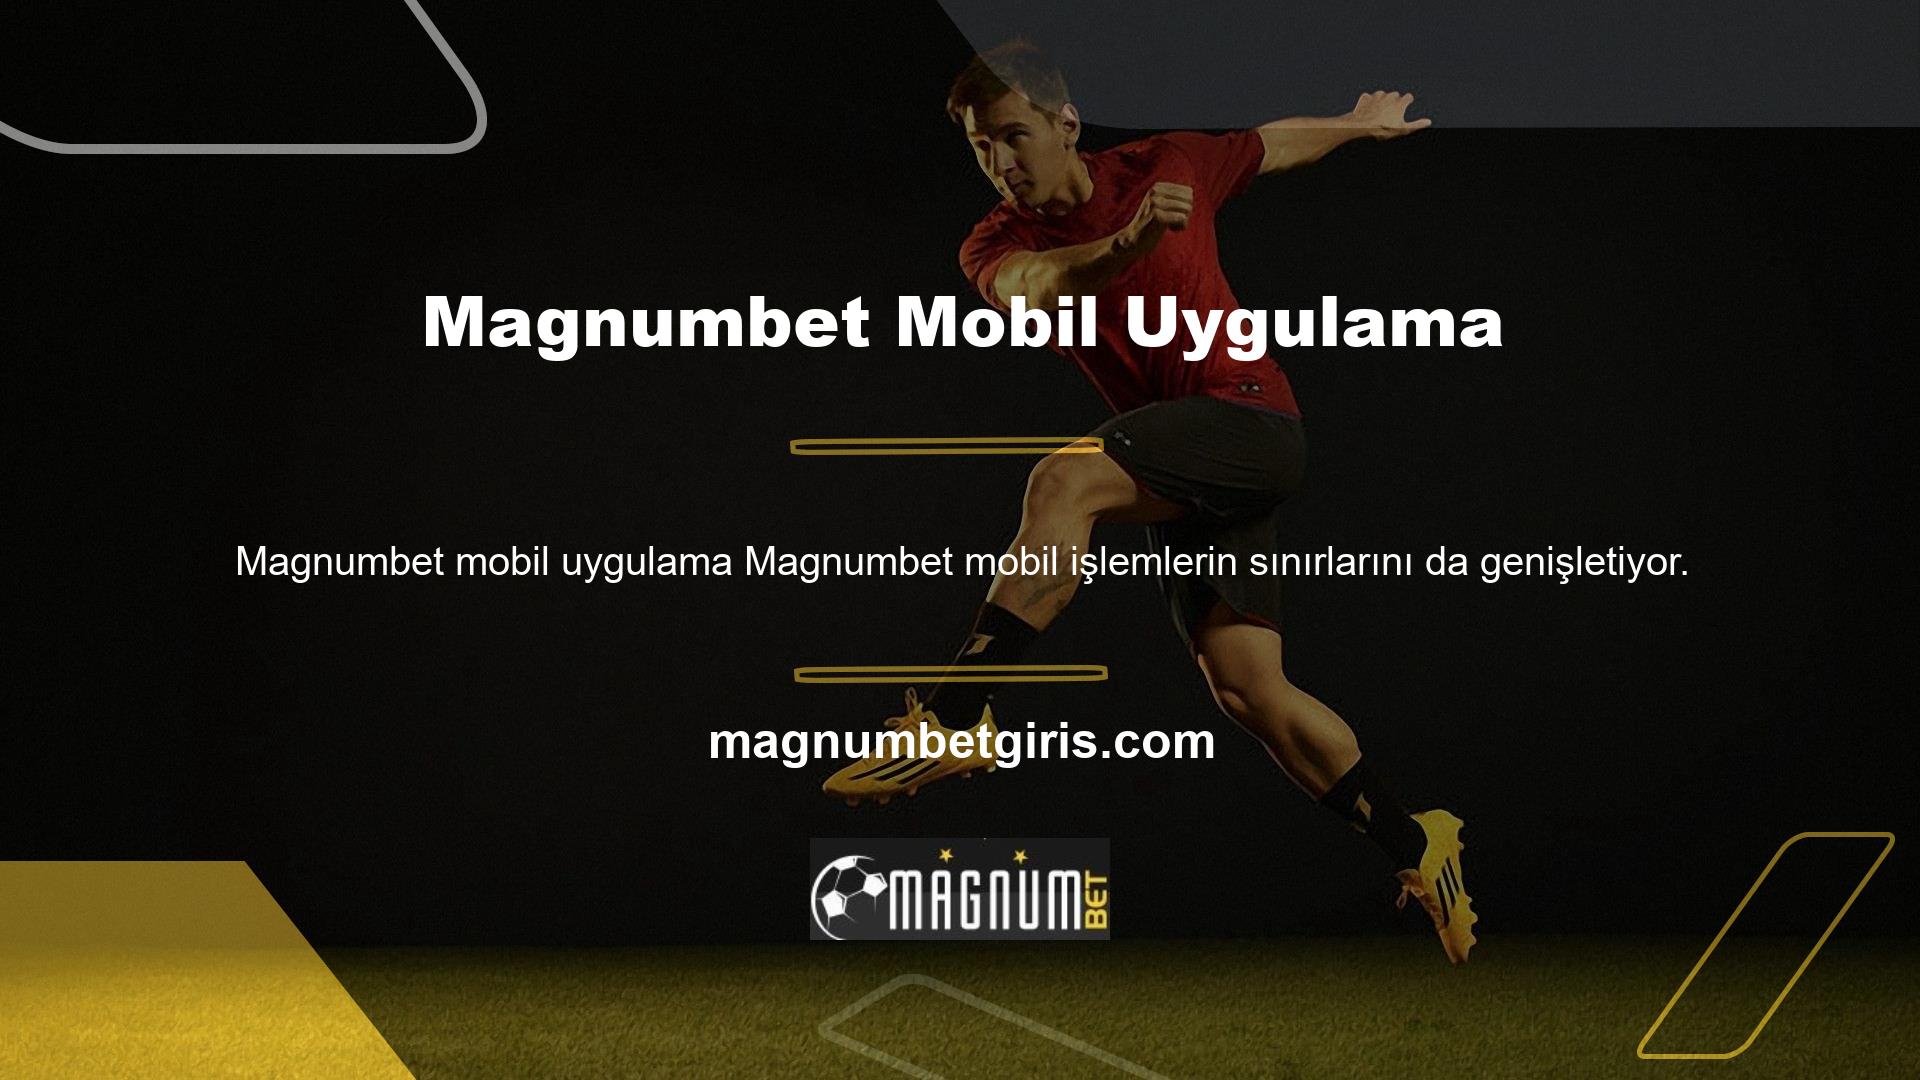 Örnek olarak bu oyun sitesi markasını ele alalım: Ülkemizde en çok oynanan sitelerden biridir ve bu durum Magnumbet sitesinin mobil versiyonuyla da devam etmektedir